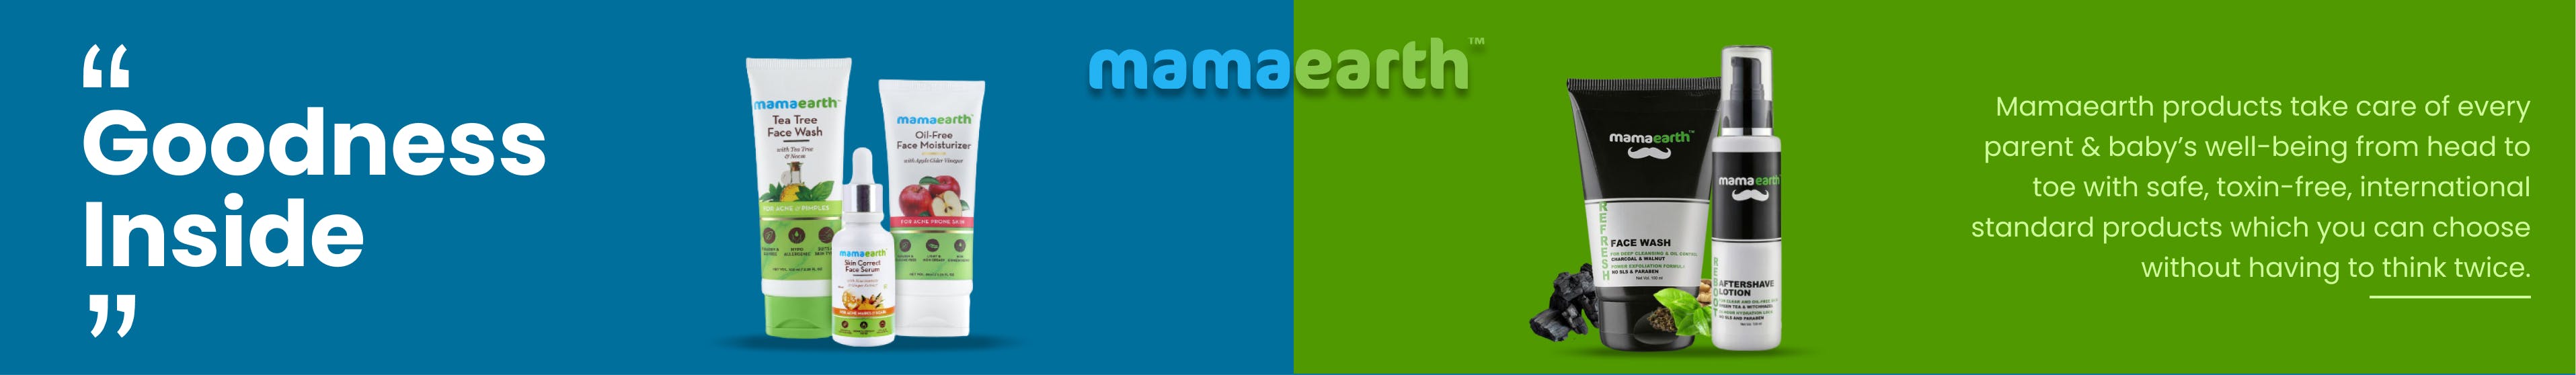 mamaearth-1.jpg